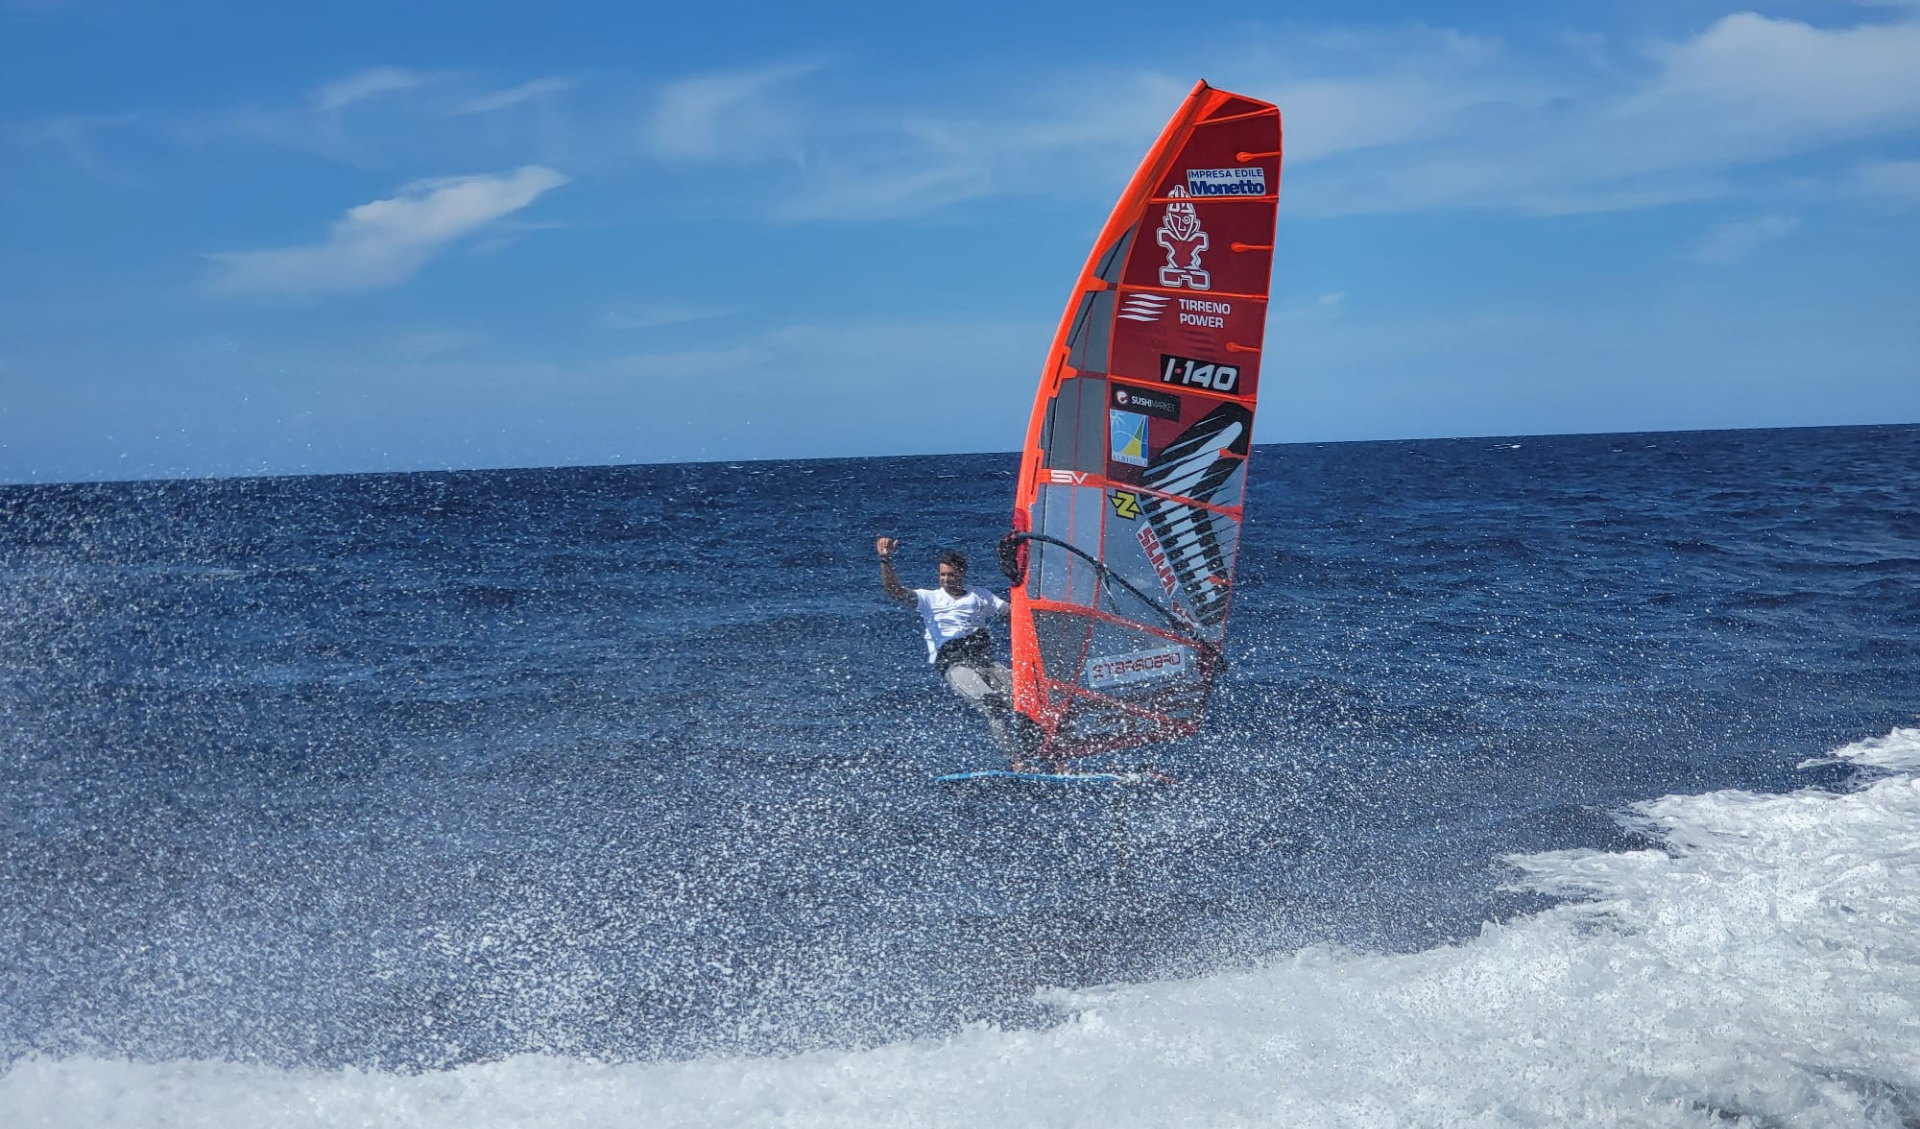 Dalla Liguria alla Corsica in windsurf: 6 ore e il sogno realizzato di Matteo